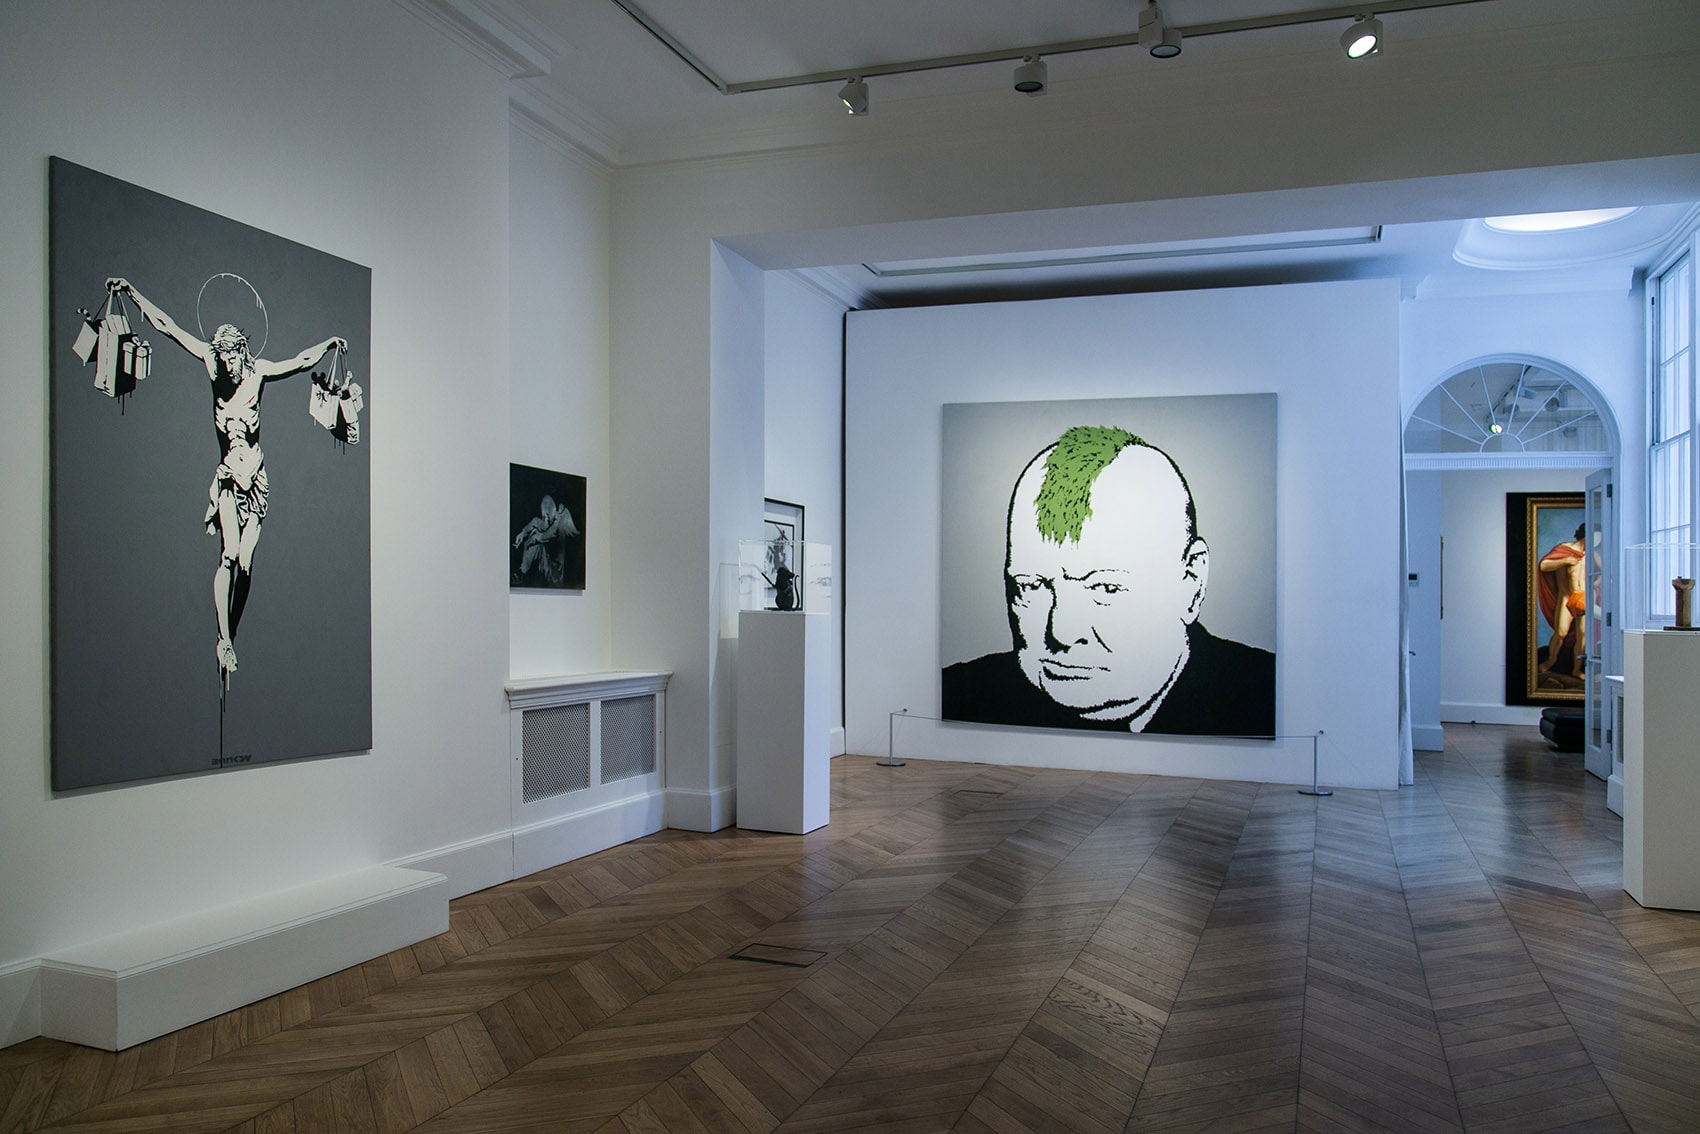 Frameless art exhibition london